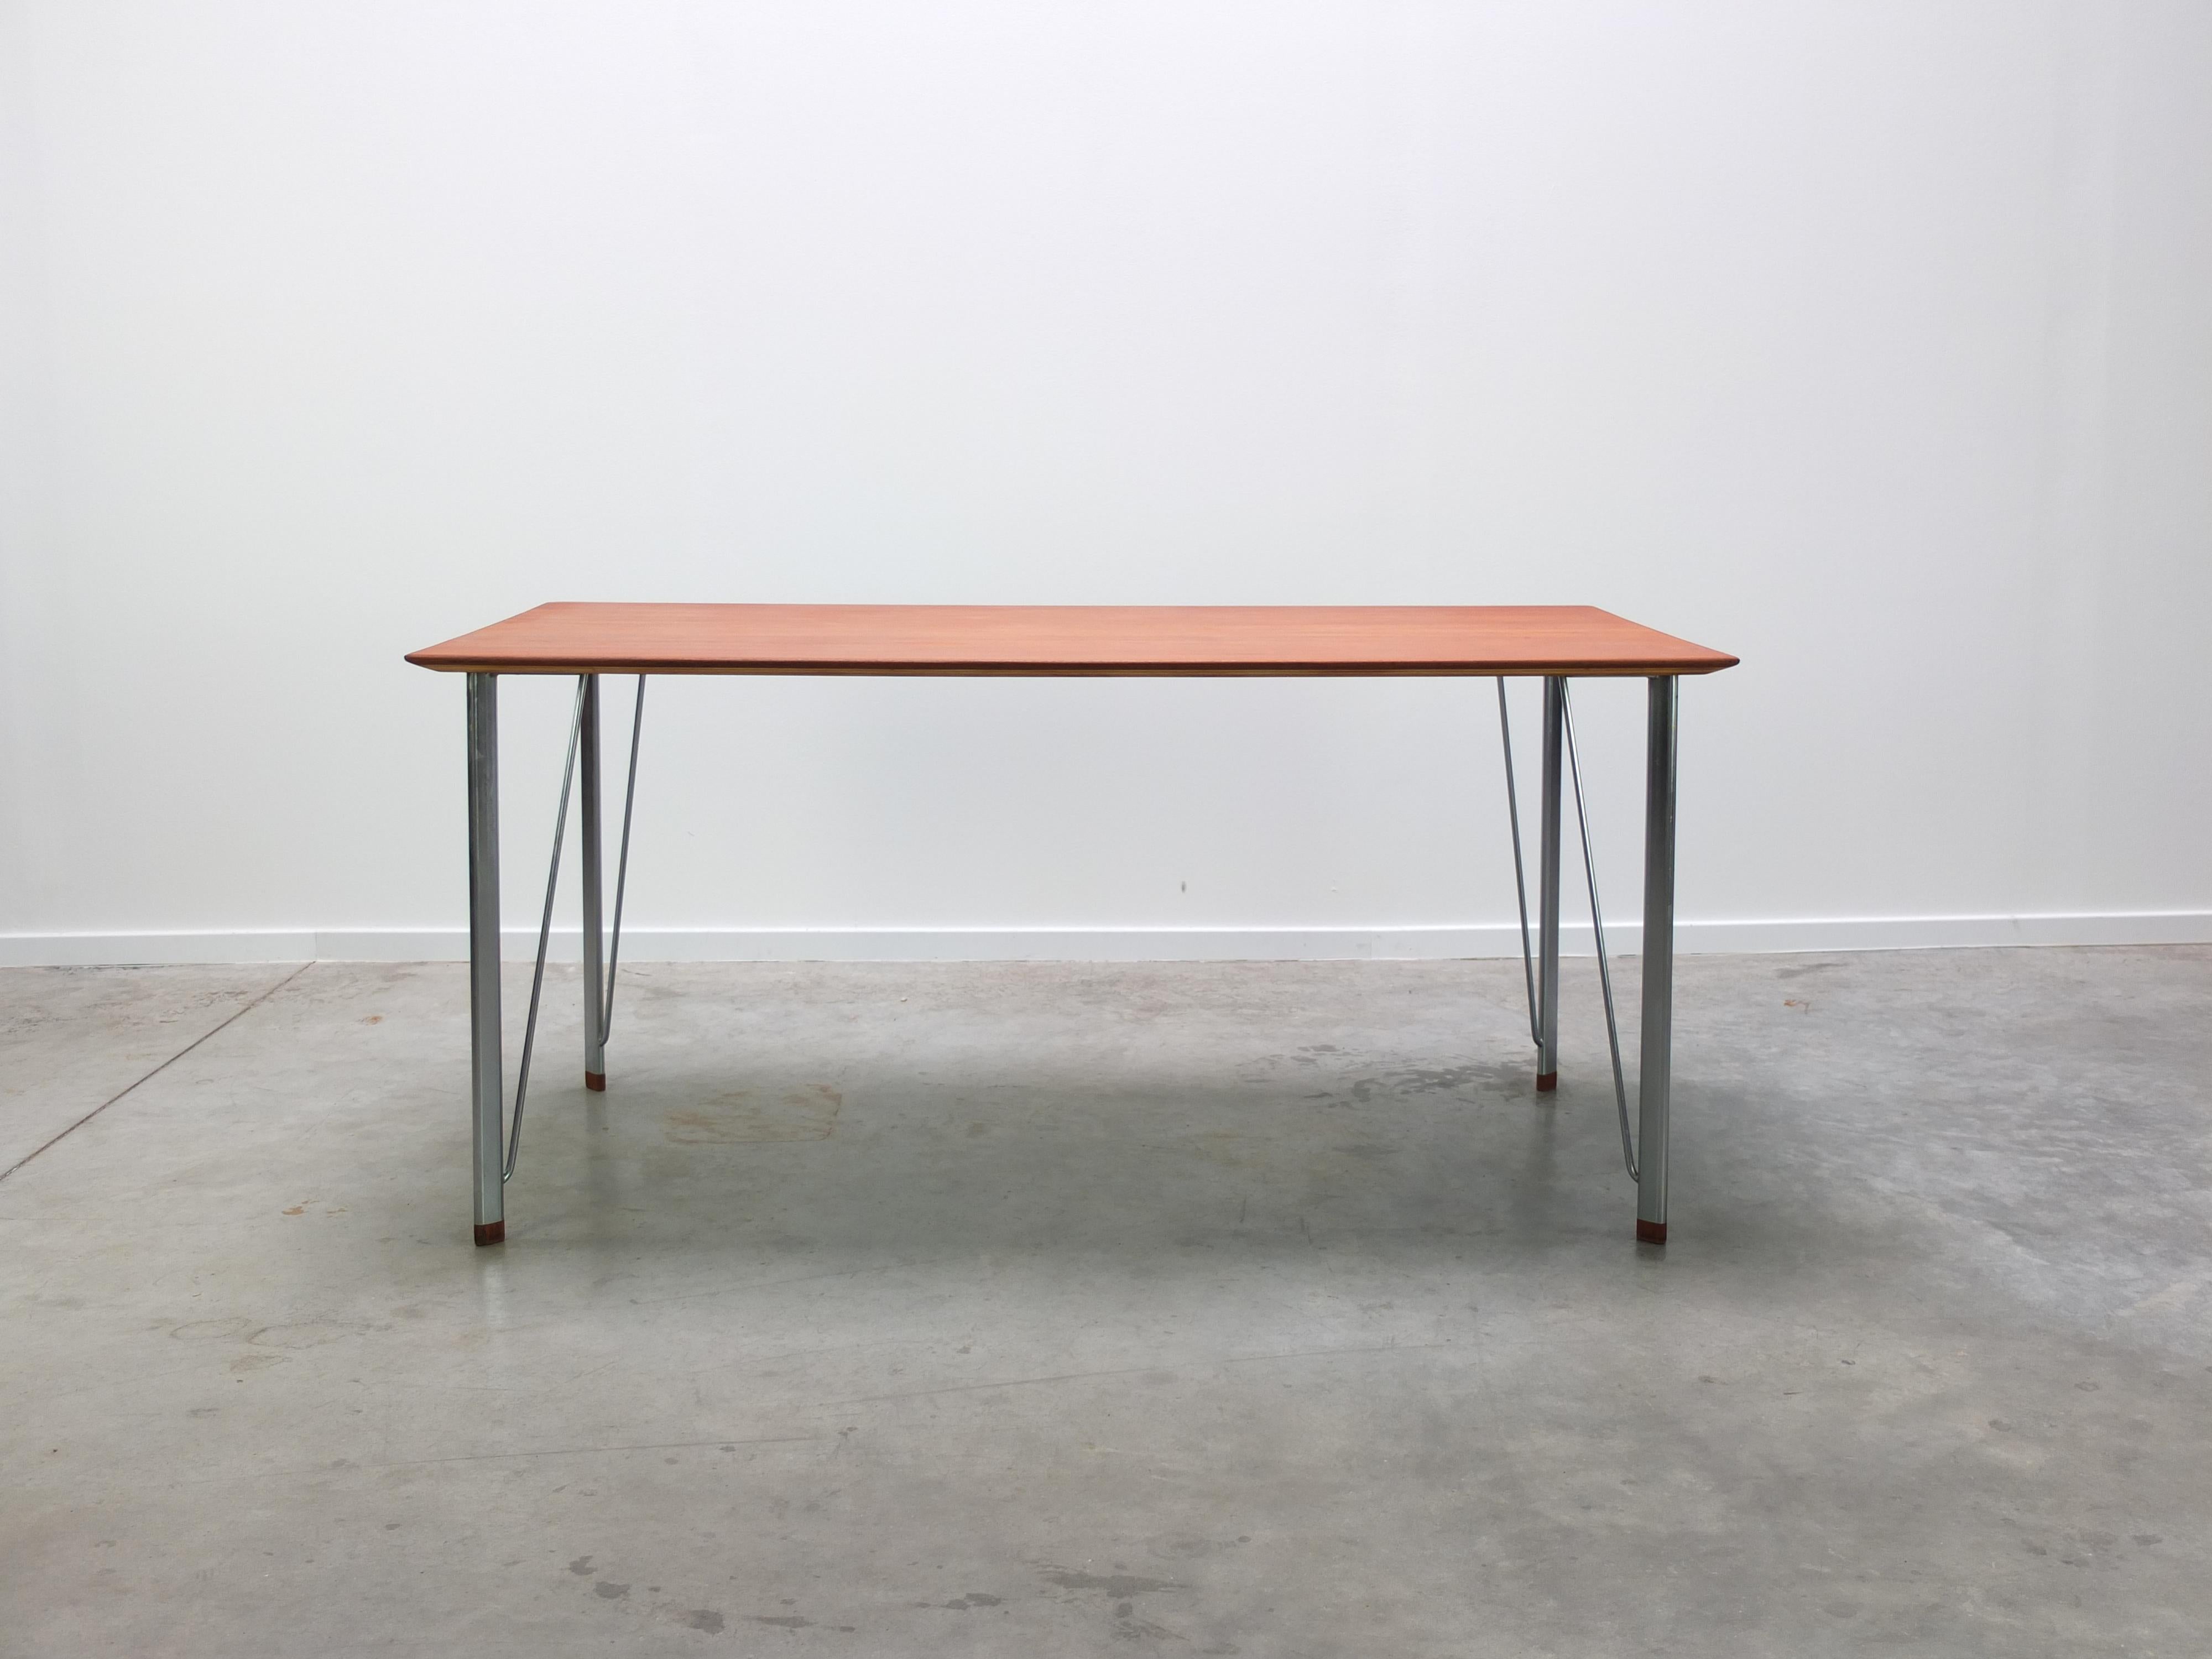 Un modèle rare de table à manger ou de bureau '3605' conçu par Arne Jacobsen pour Fritz Hansen en 1955. Cette table n'a été produite que pendant quelques années au cours des années 1950 et est donc difficile à trouver. Un design très minimaliste